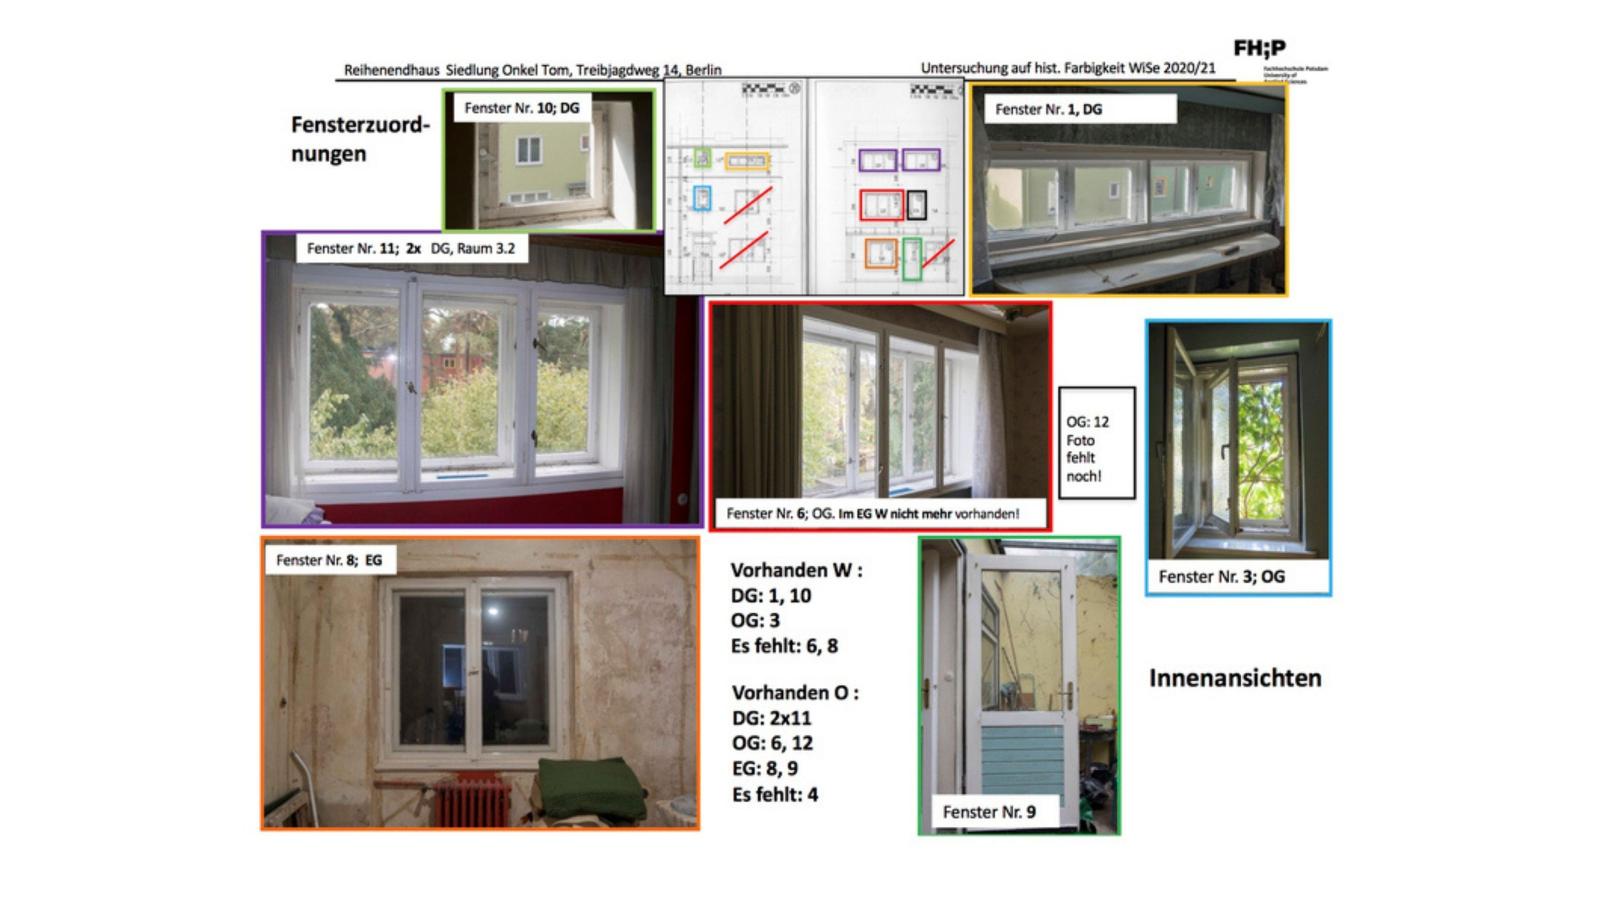 Darstellung der Innenansichten der vorhandenen Fenstertypen im Reihenendhaus Treibjagdweg 14